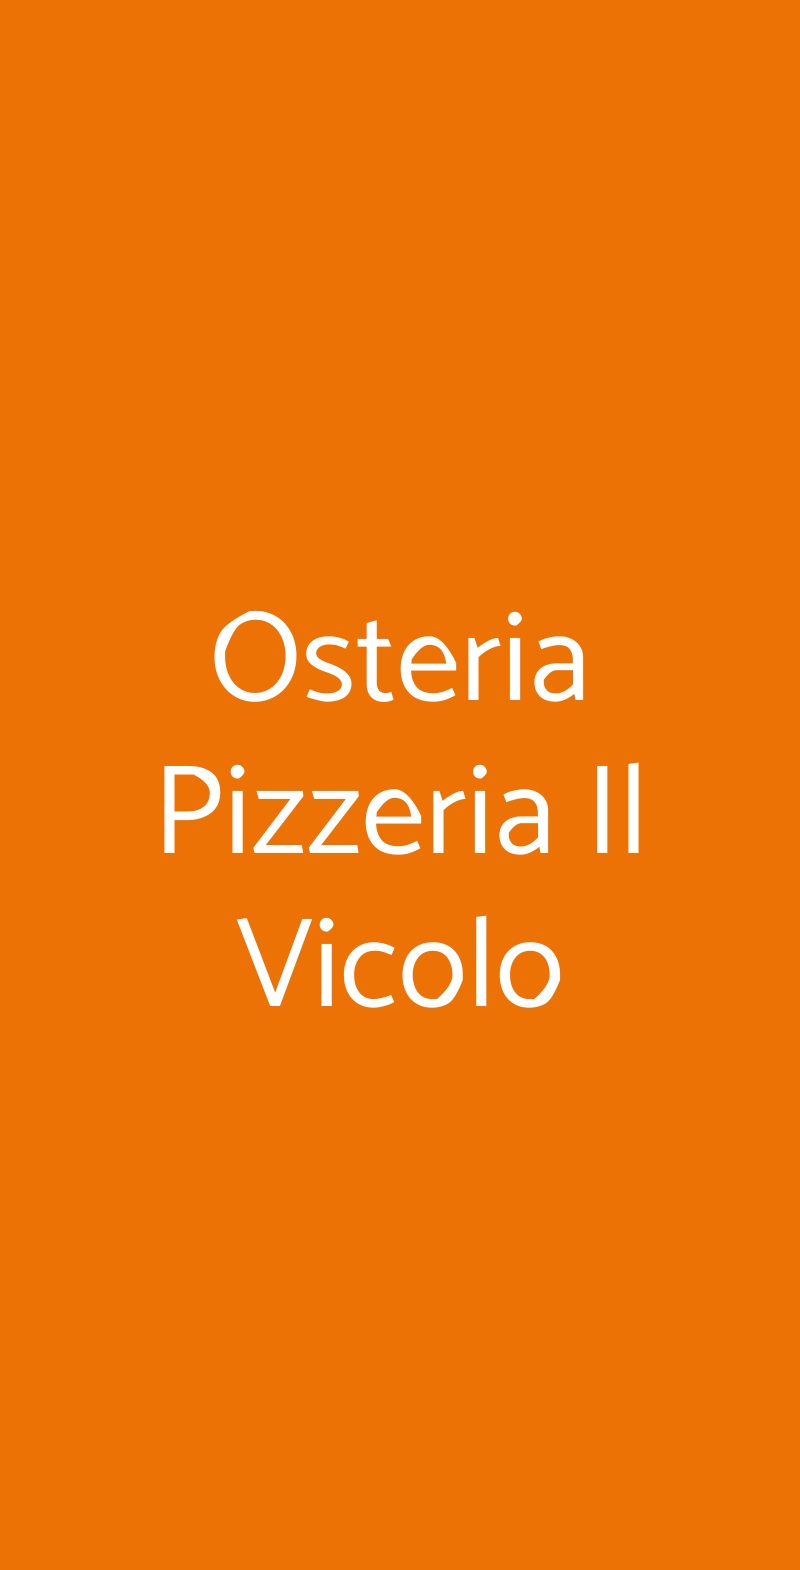 Osteria Pizzeria Il Vicolo Siena menù 1 pagina